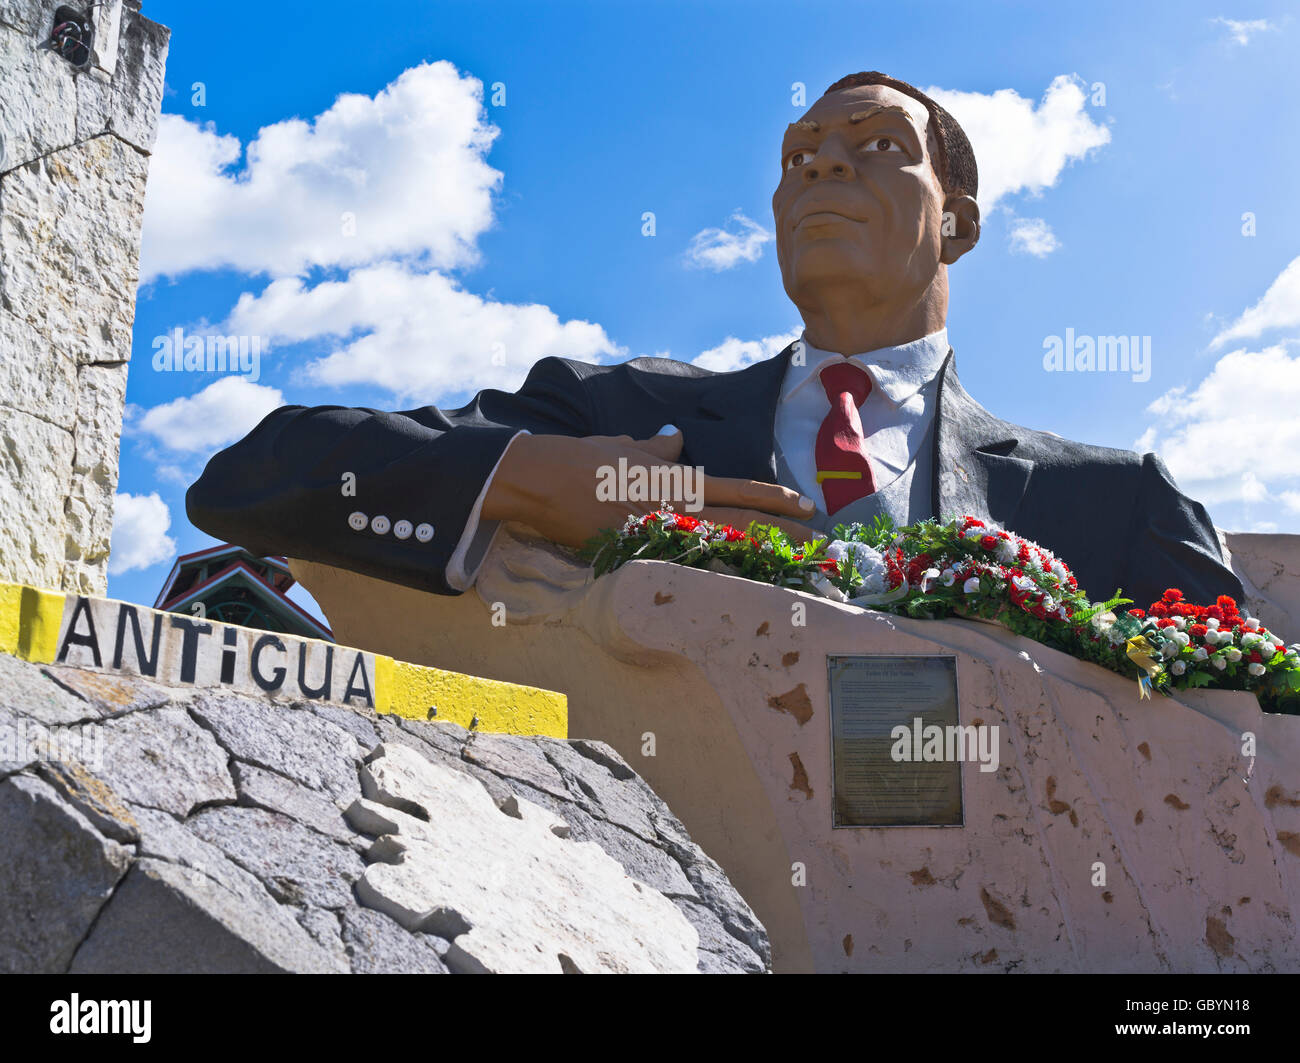 dh St Johns ANTIGUA Karibik Statue von Sir Vere Cornwall Bird erster Premierminister von Antigua Barbuda Stockfoto